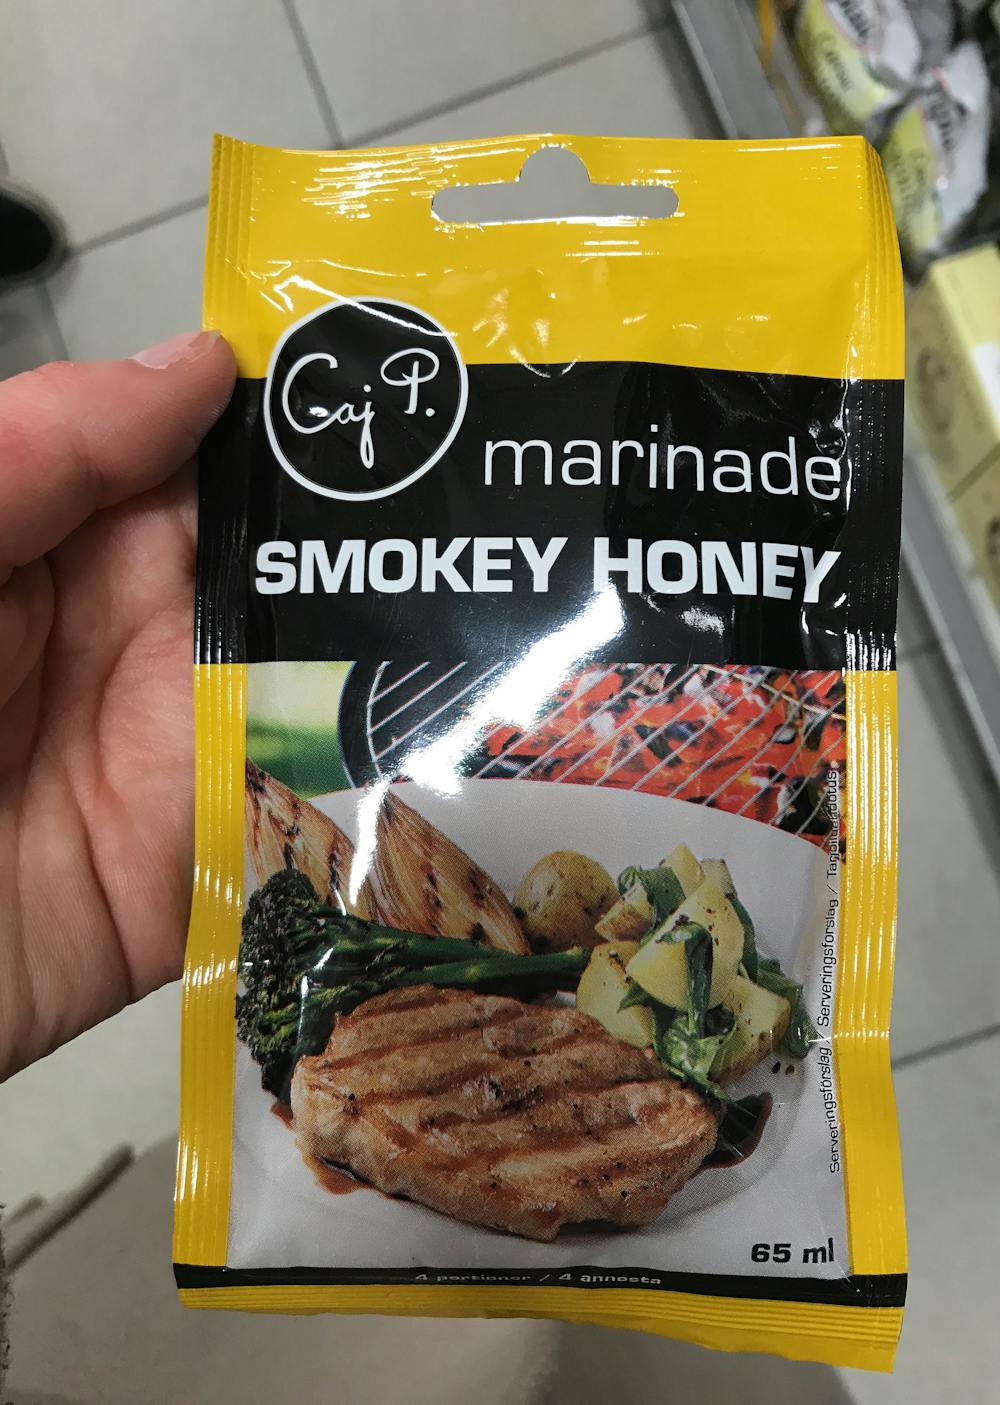 Marinade smokey honey, Caj P.